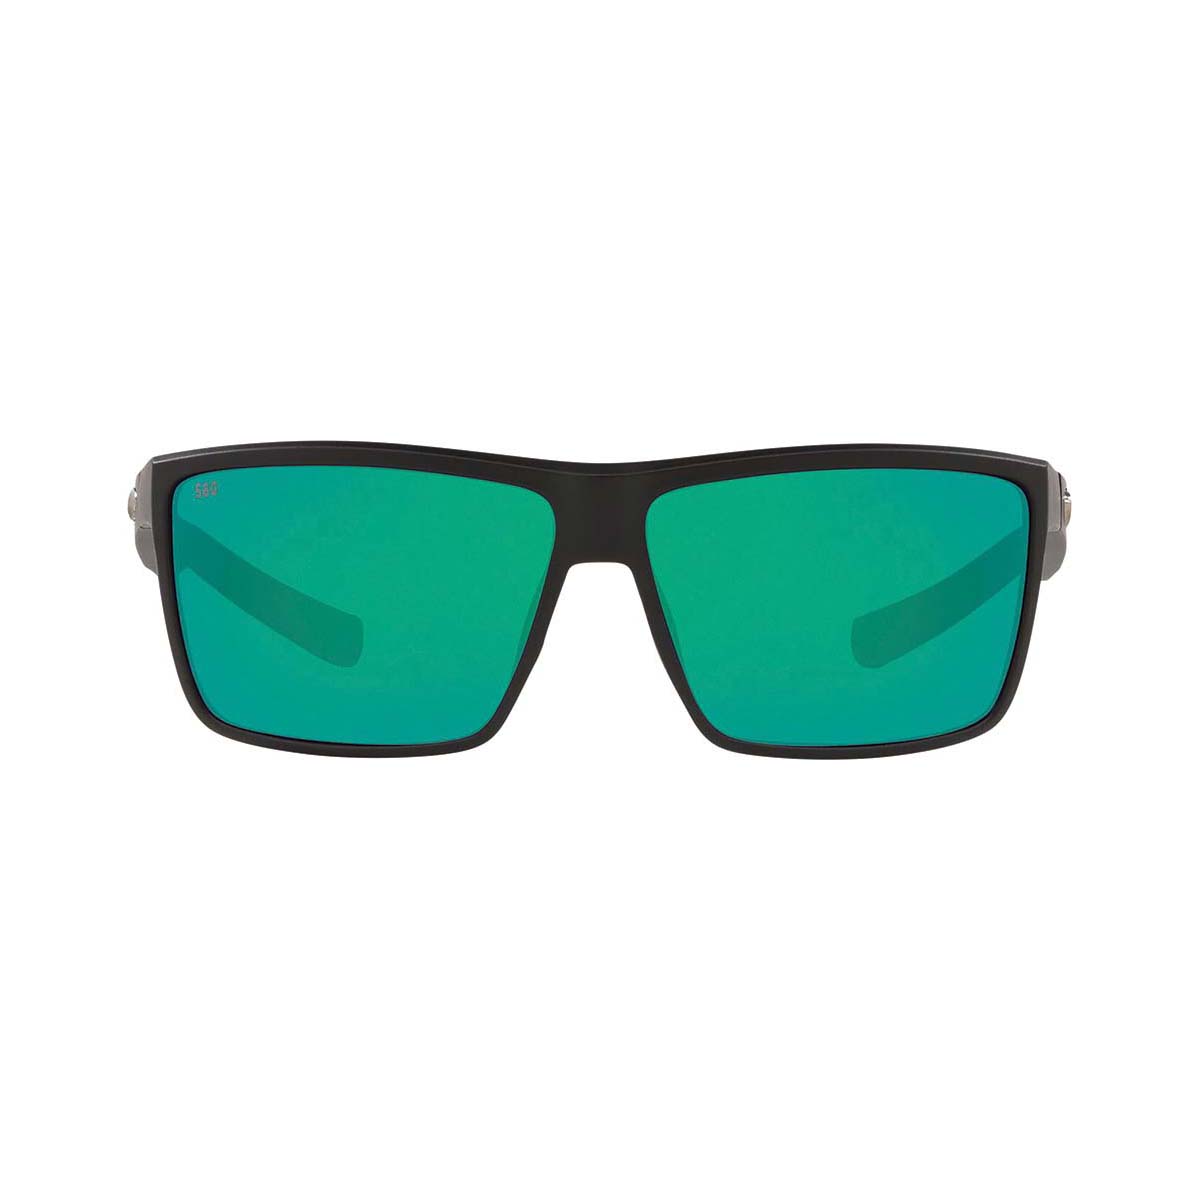 Costa Rinconcito Men's Sunglasses Black with Green Lens